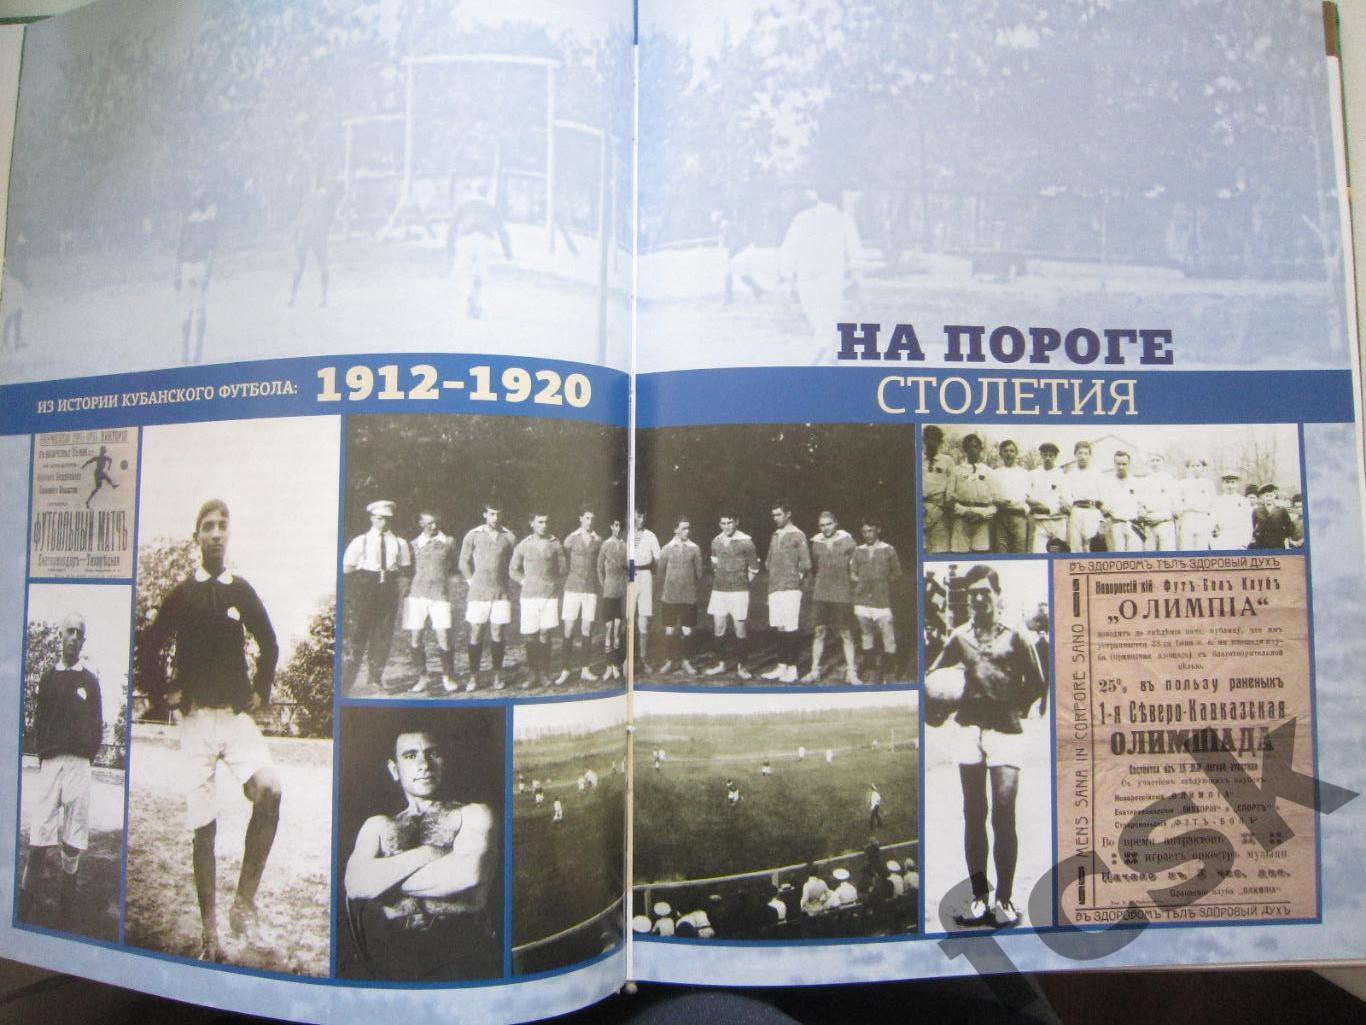 Футбольный матч длиной в столетие. Из истории кубанского футбола 1912-2012 1